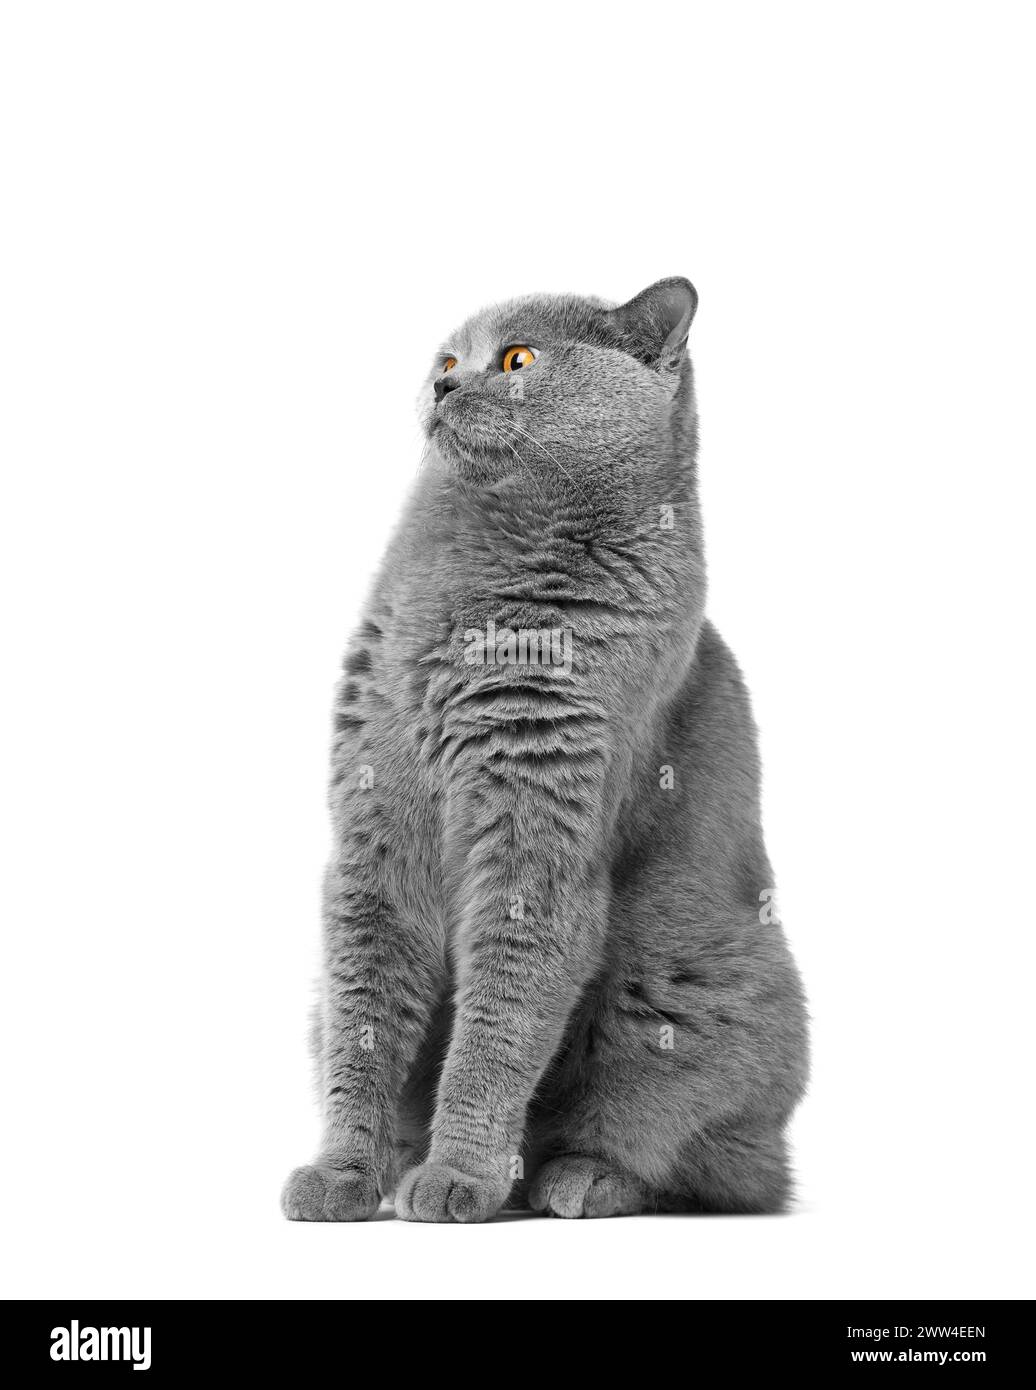 Un chat bleu britannique de race pure avec de grands yeux orange est assis sur un fond blanc, regardant vers l'avant dans la surprise et la peur. Banque D'Images